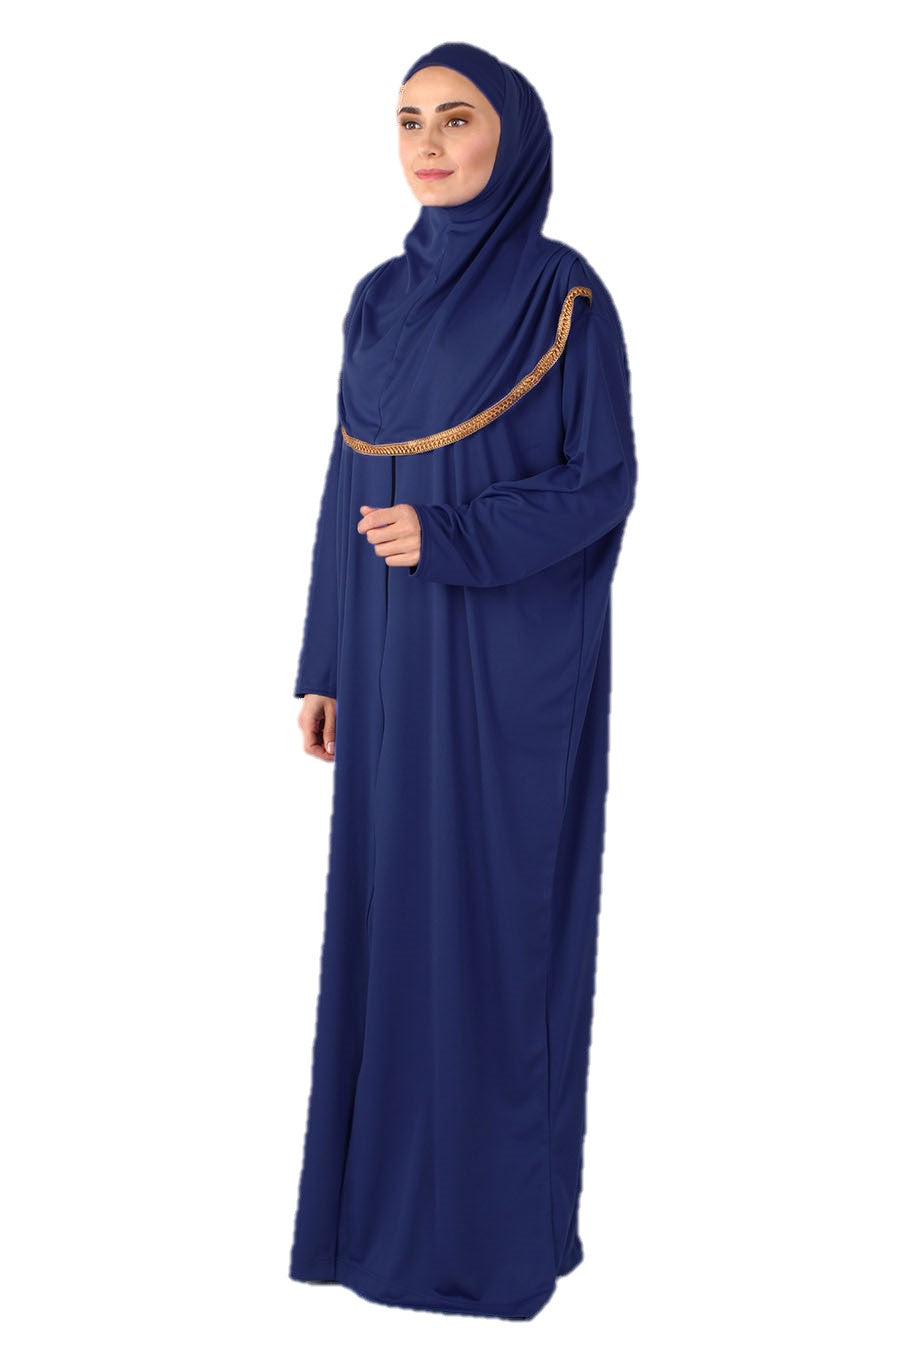 Blue Zipper Turkish Prayer Dress